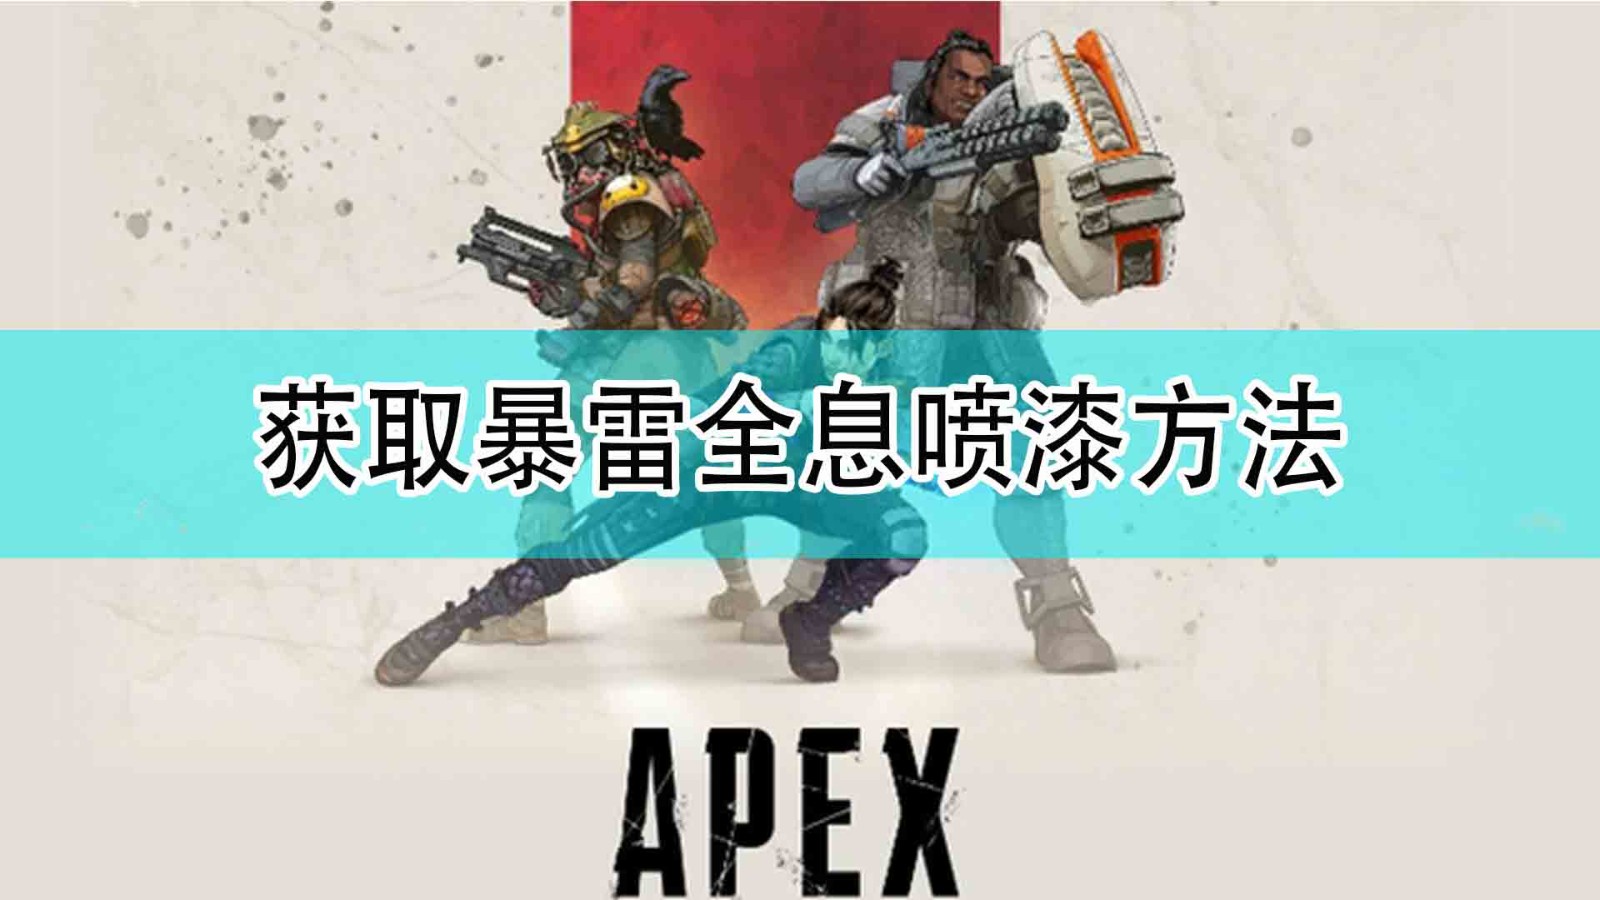 《Apex英雄》獲取暴雷全息噴漆方法分享